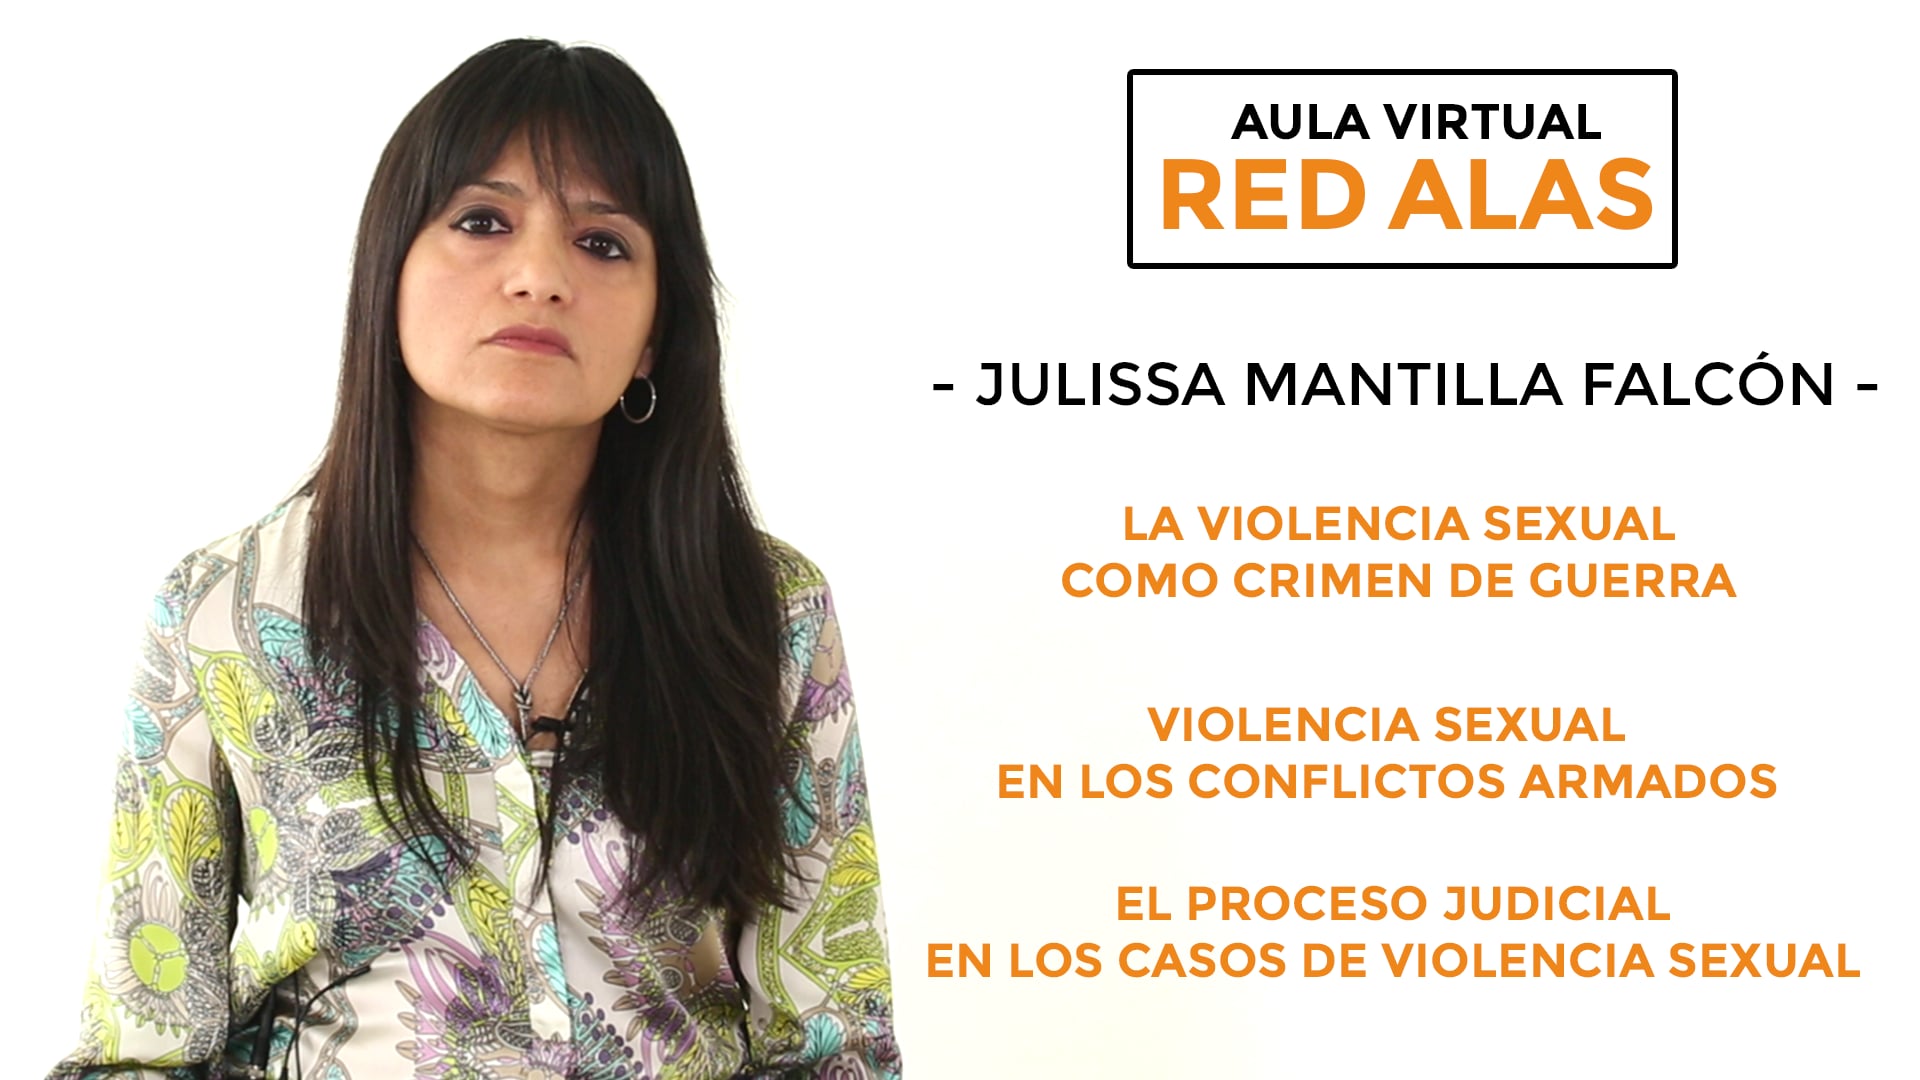 VIOLENCIA SEXUAL EN LOS CONFLICTOS ARMADOS - Julissa Mantilla Falcón